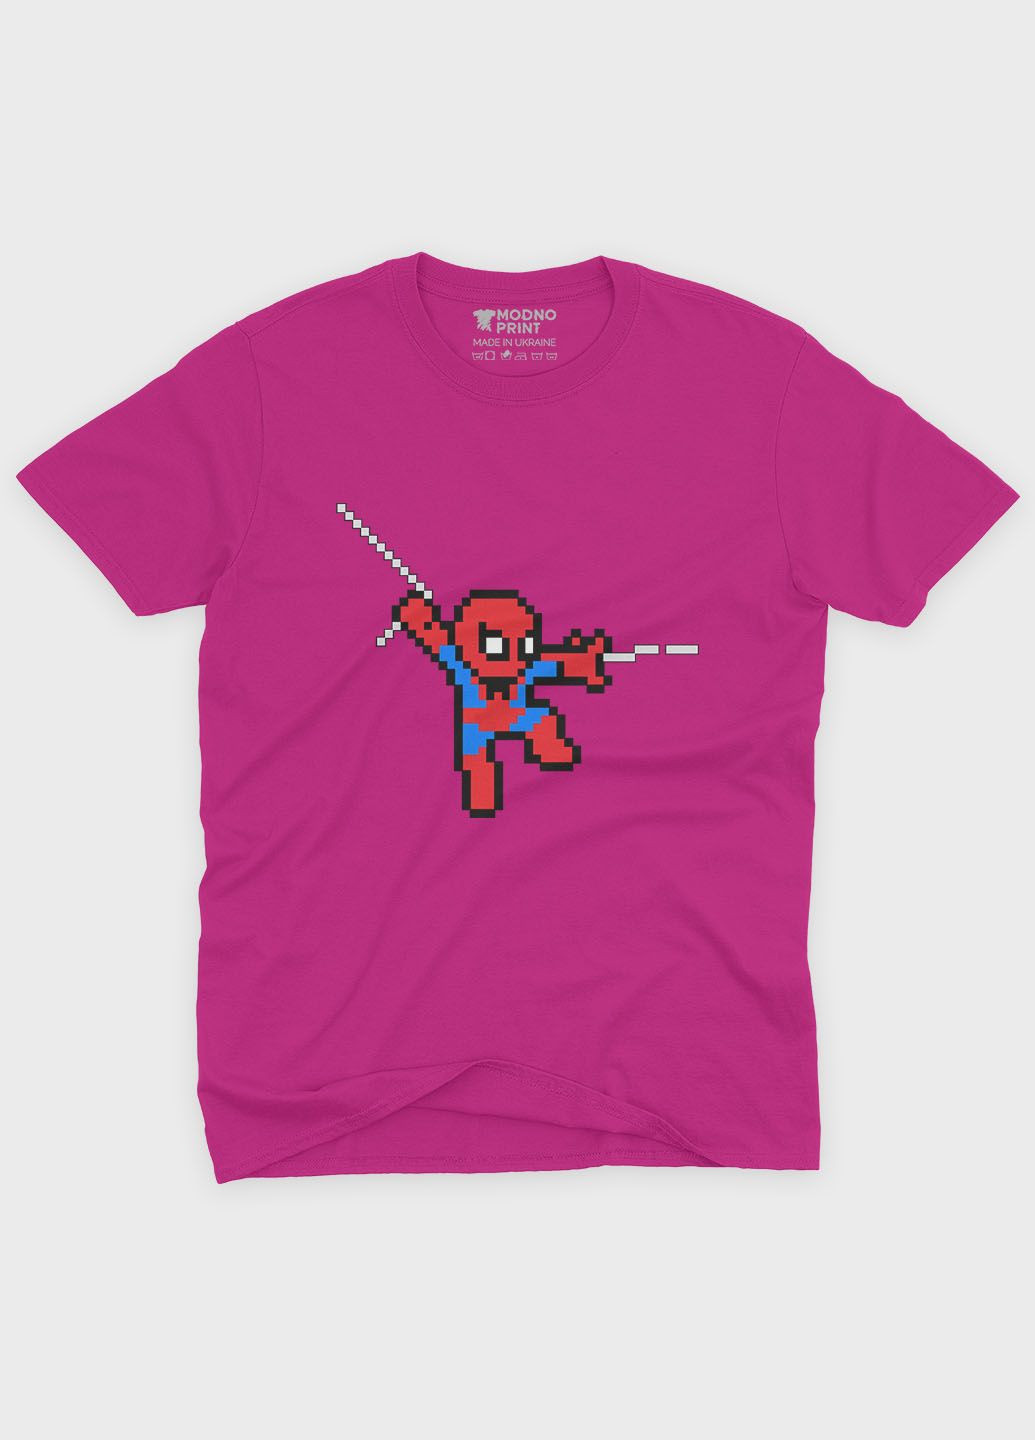 Розовая демисезонная футболка для девочки с принтом супергероя - человек-паук (ts001-1-fuxj-006-014-111-g) Modno